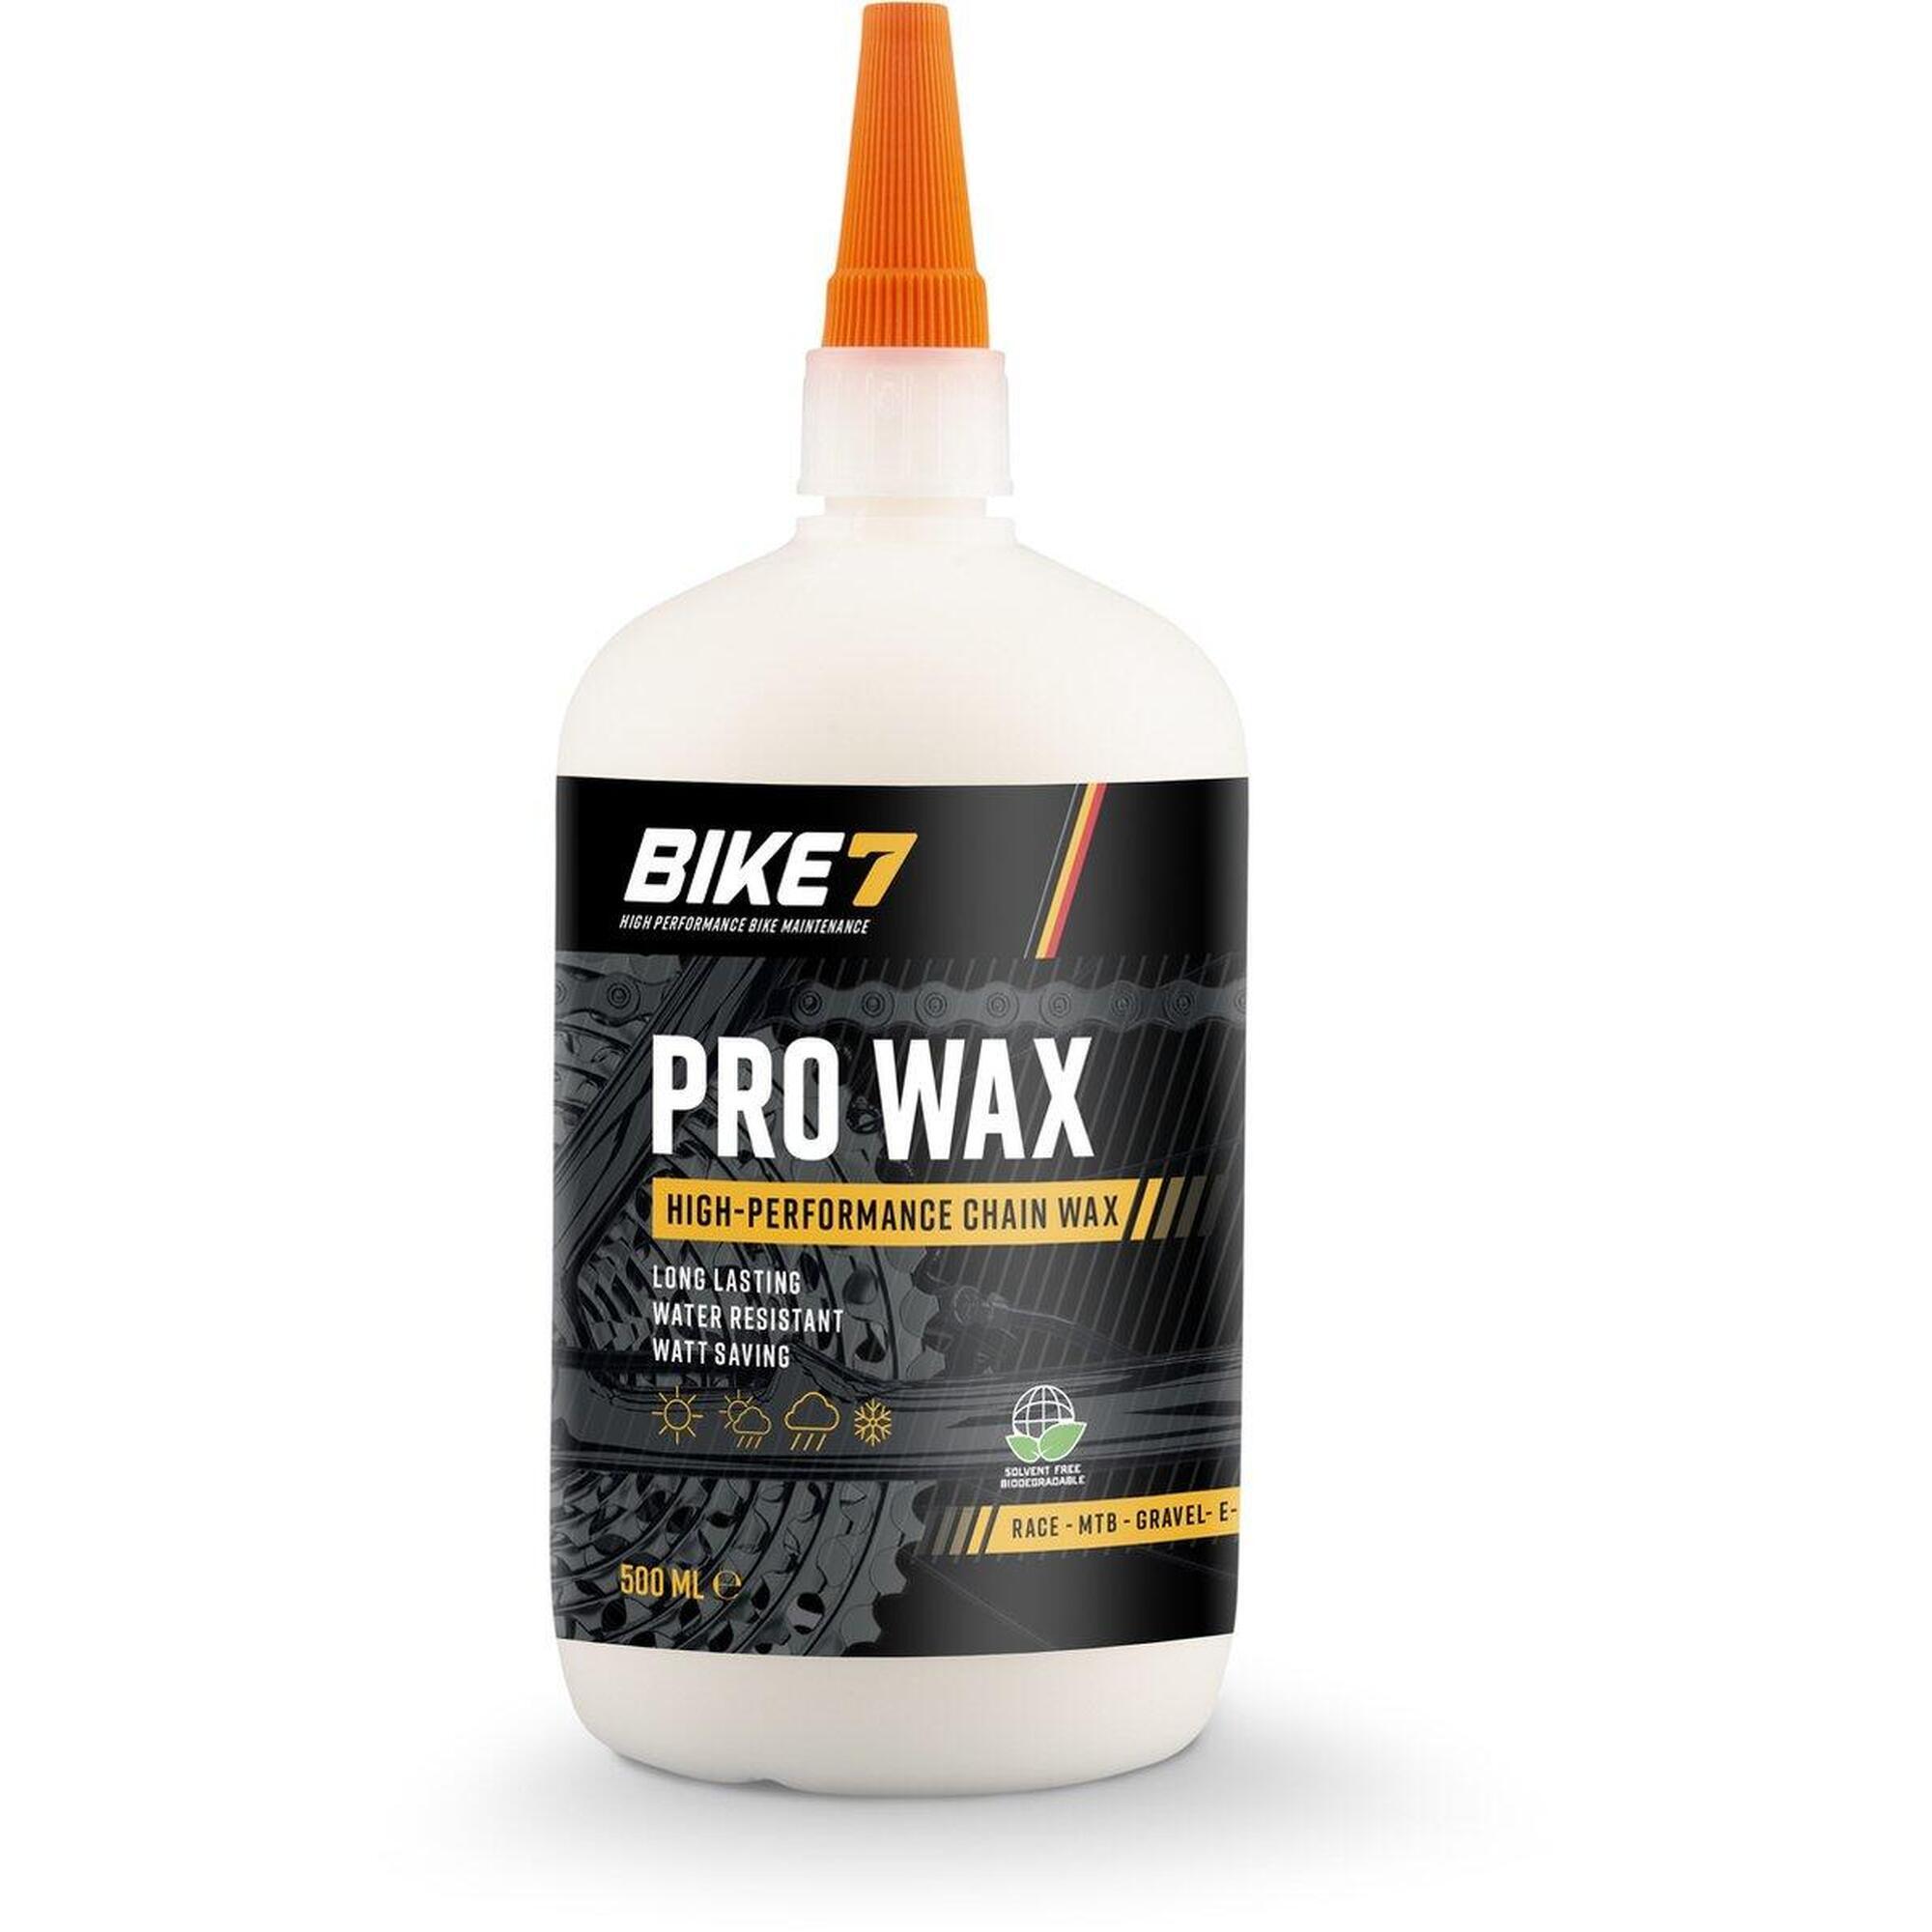 Fahrradzubehör Lang anhaltendes, wasserfestes Kettenwachs - Bike7 Pro Wax 500ml